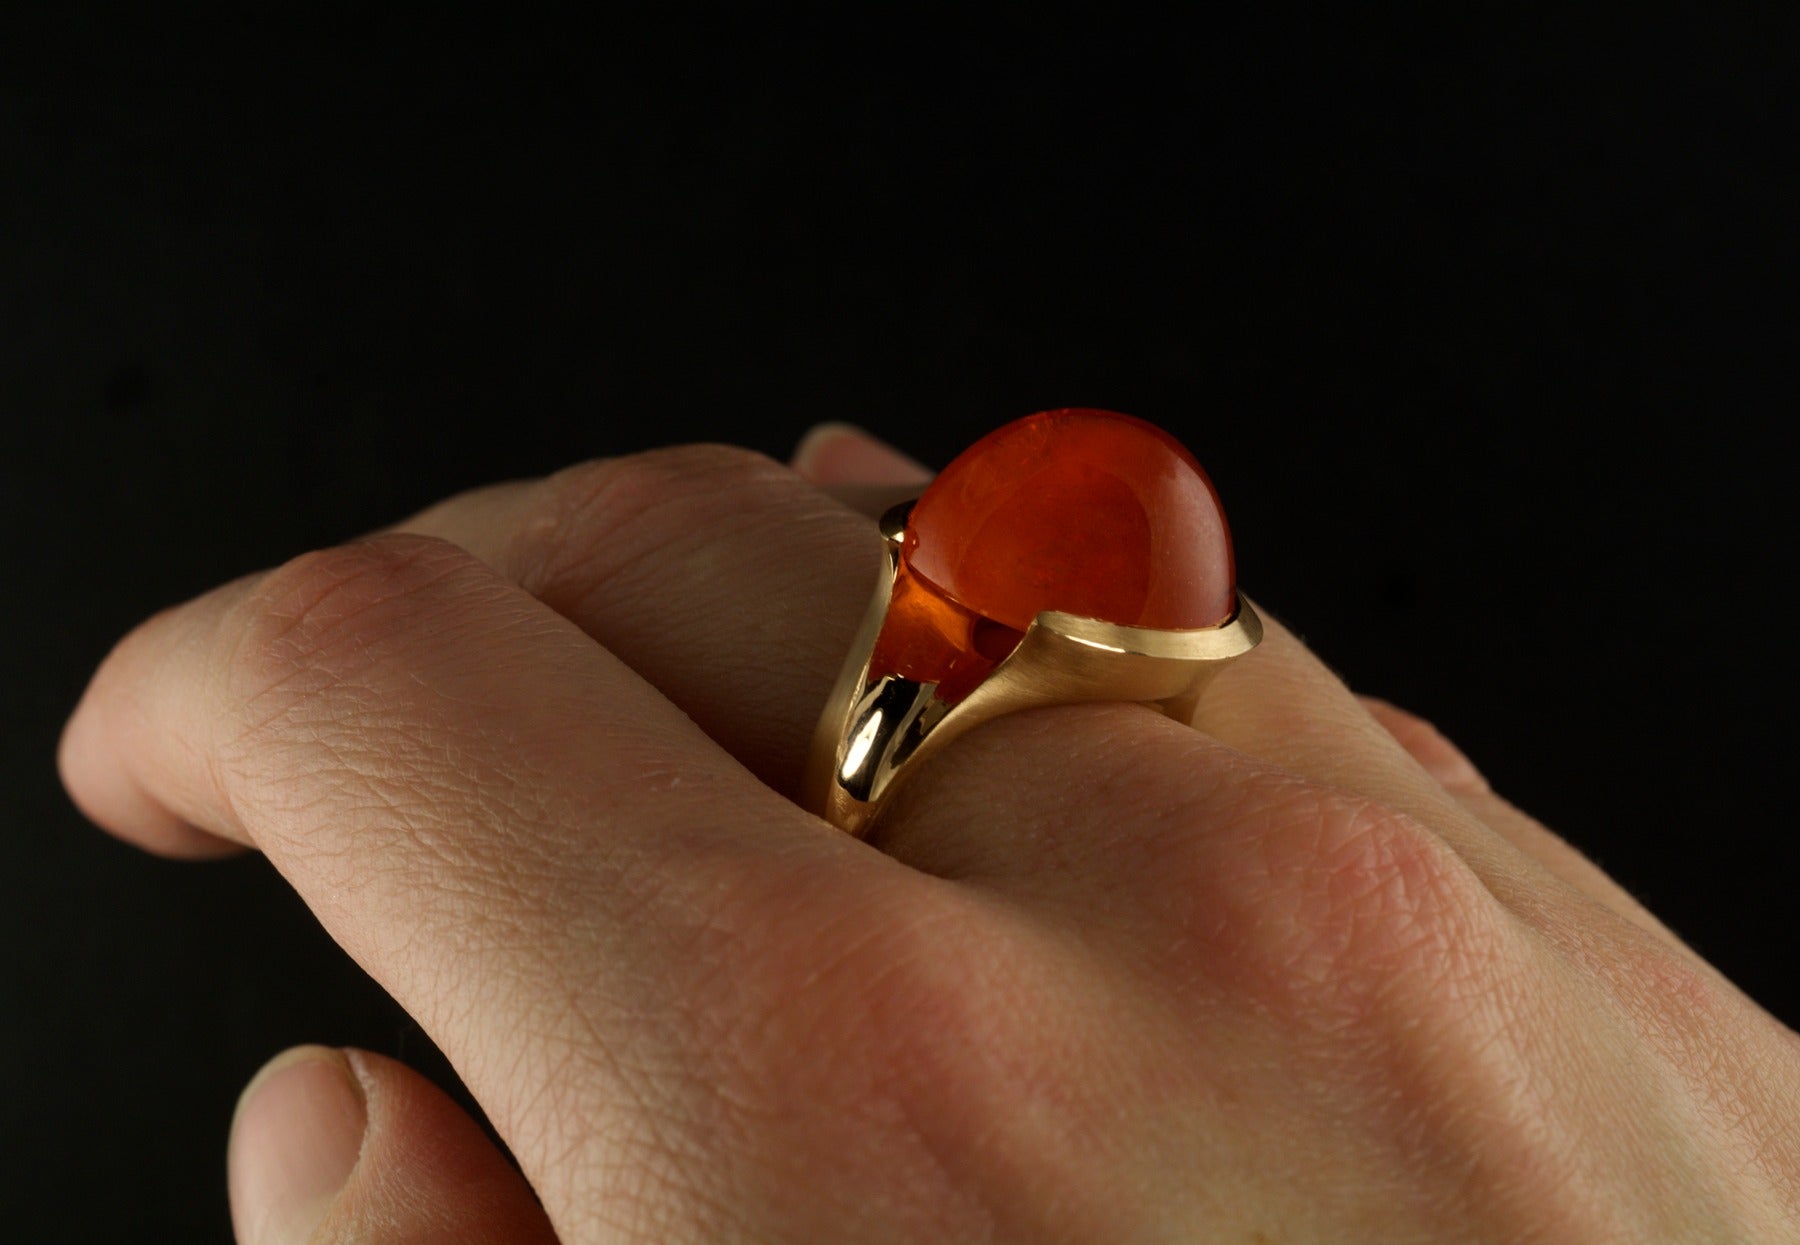 Carved garnet rose gold ring on hand